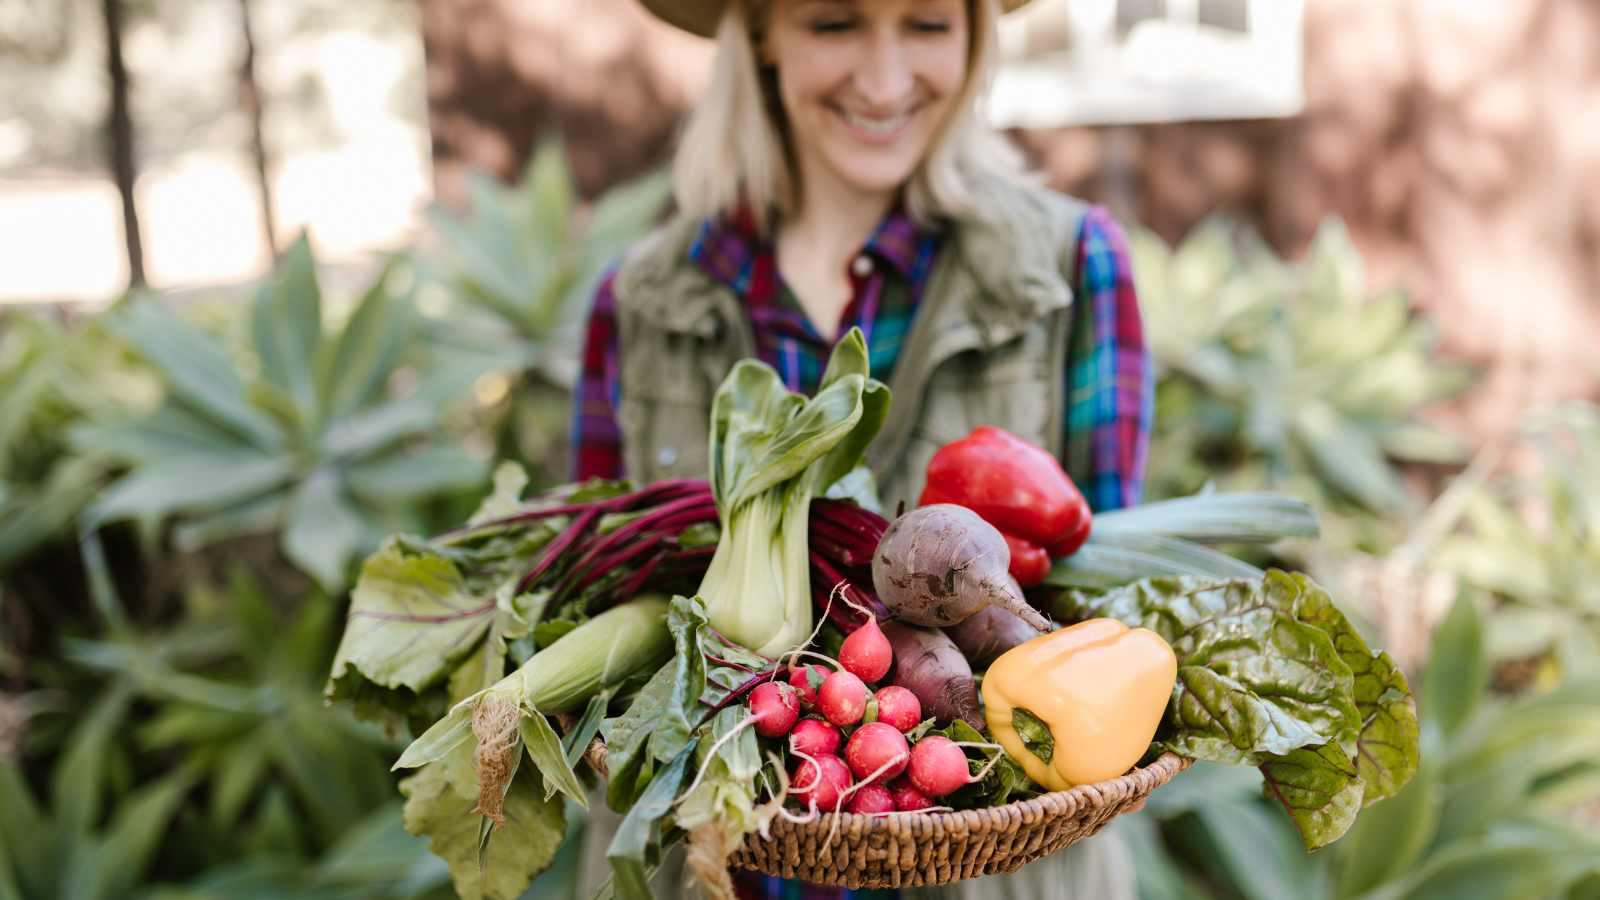 A lady holding farm produce